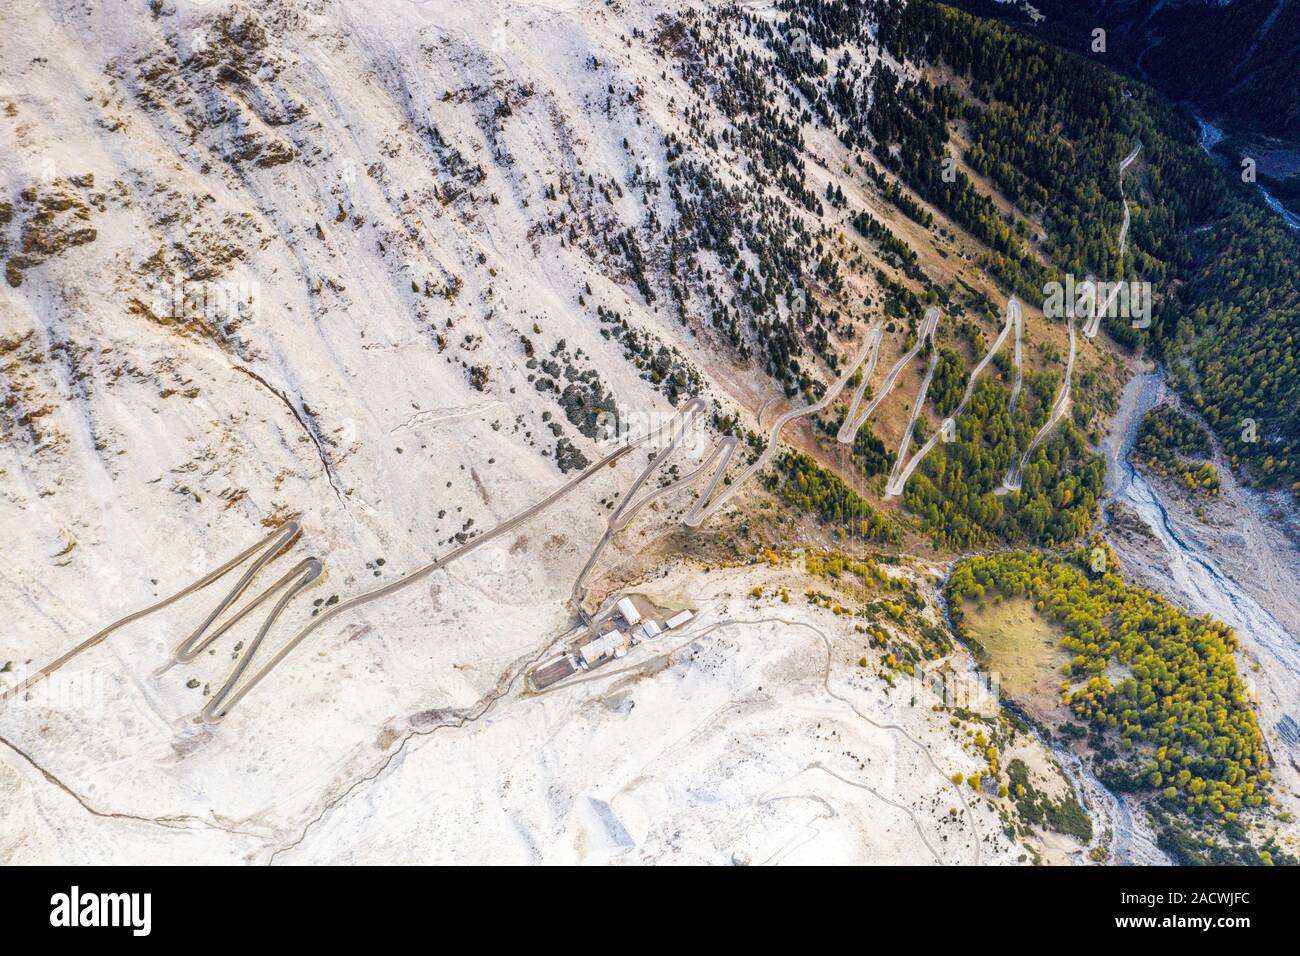 Details von engen Kurven des Stilfser Joch Mountain Road, Luftaufnahme, Provinz Bozen, Südtirol, Italien Stockfoto